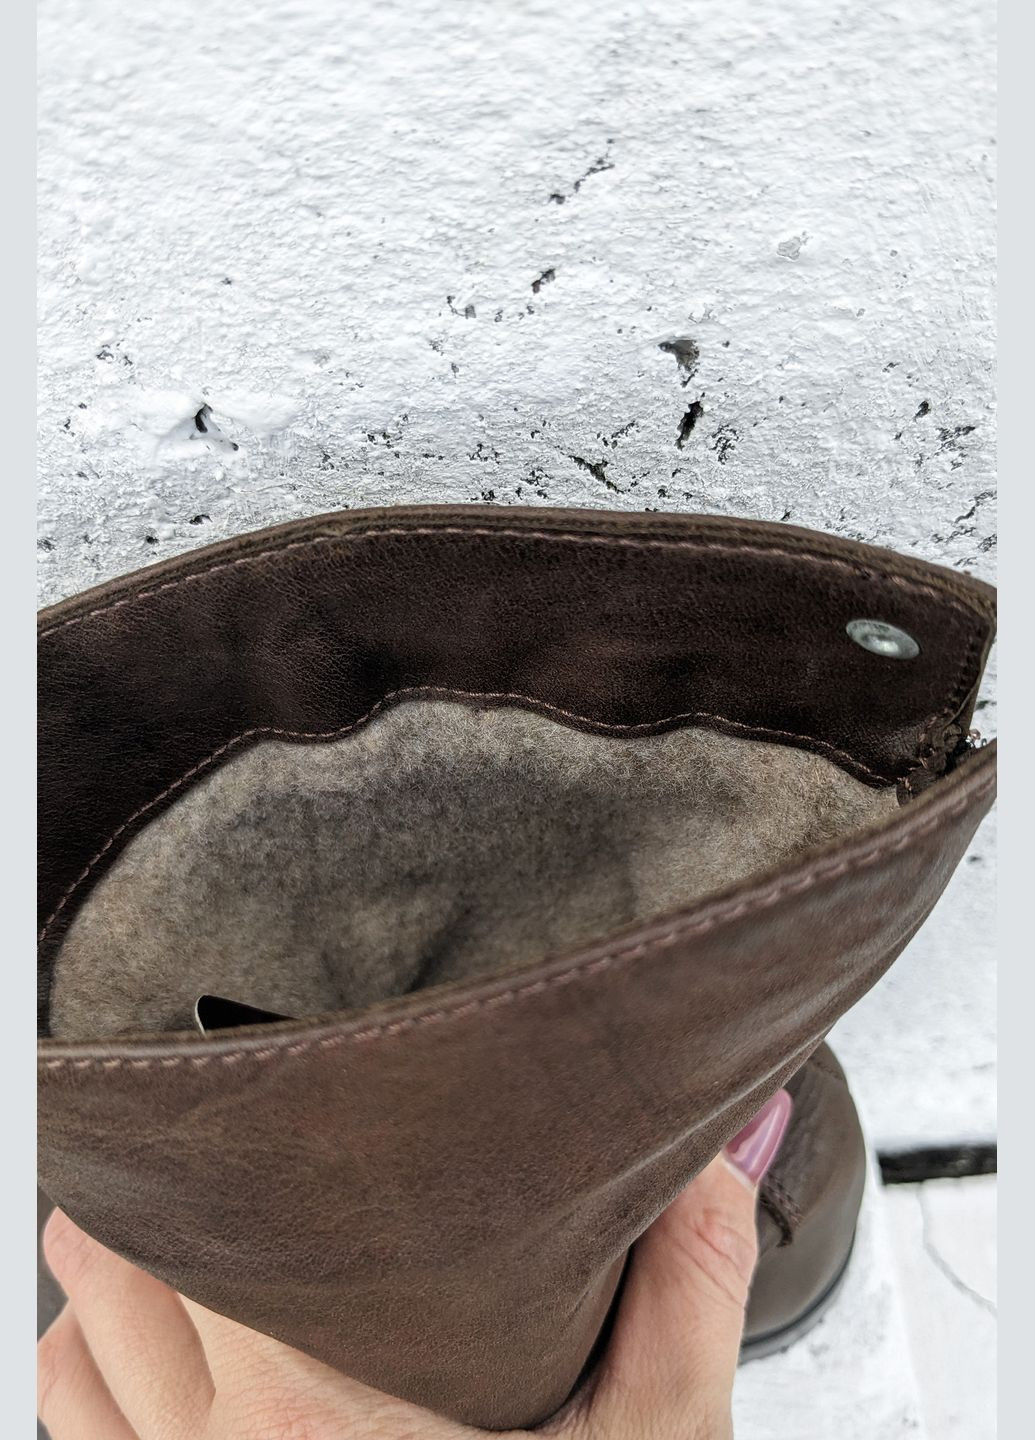 Універсальні стильні жіночі зимові чоботи InFashion чоботи (292552666)